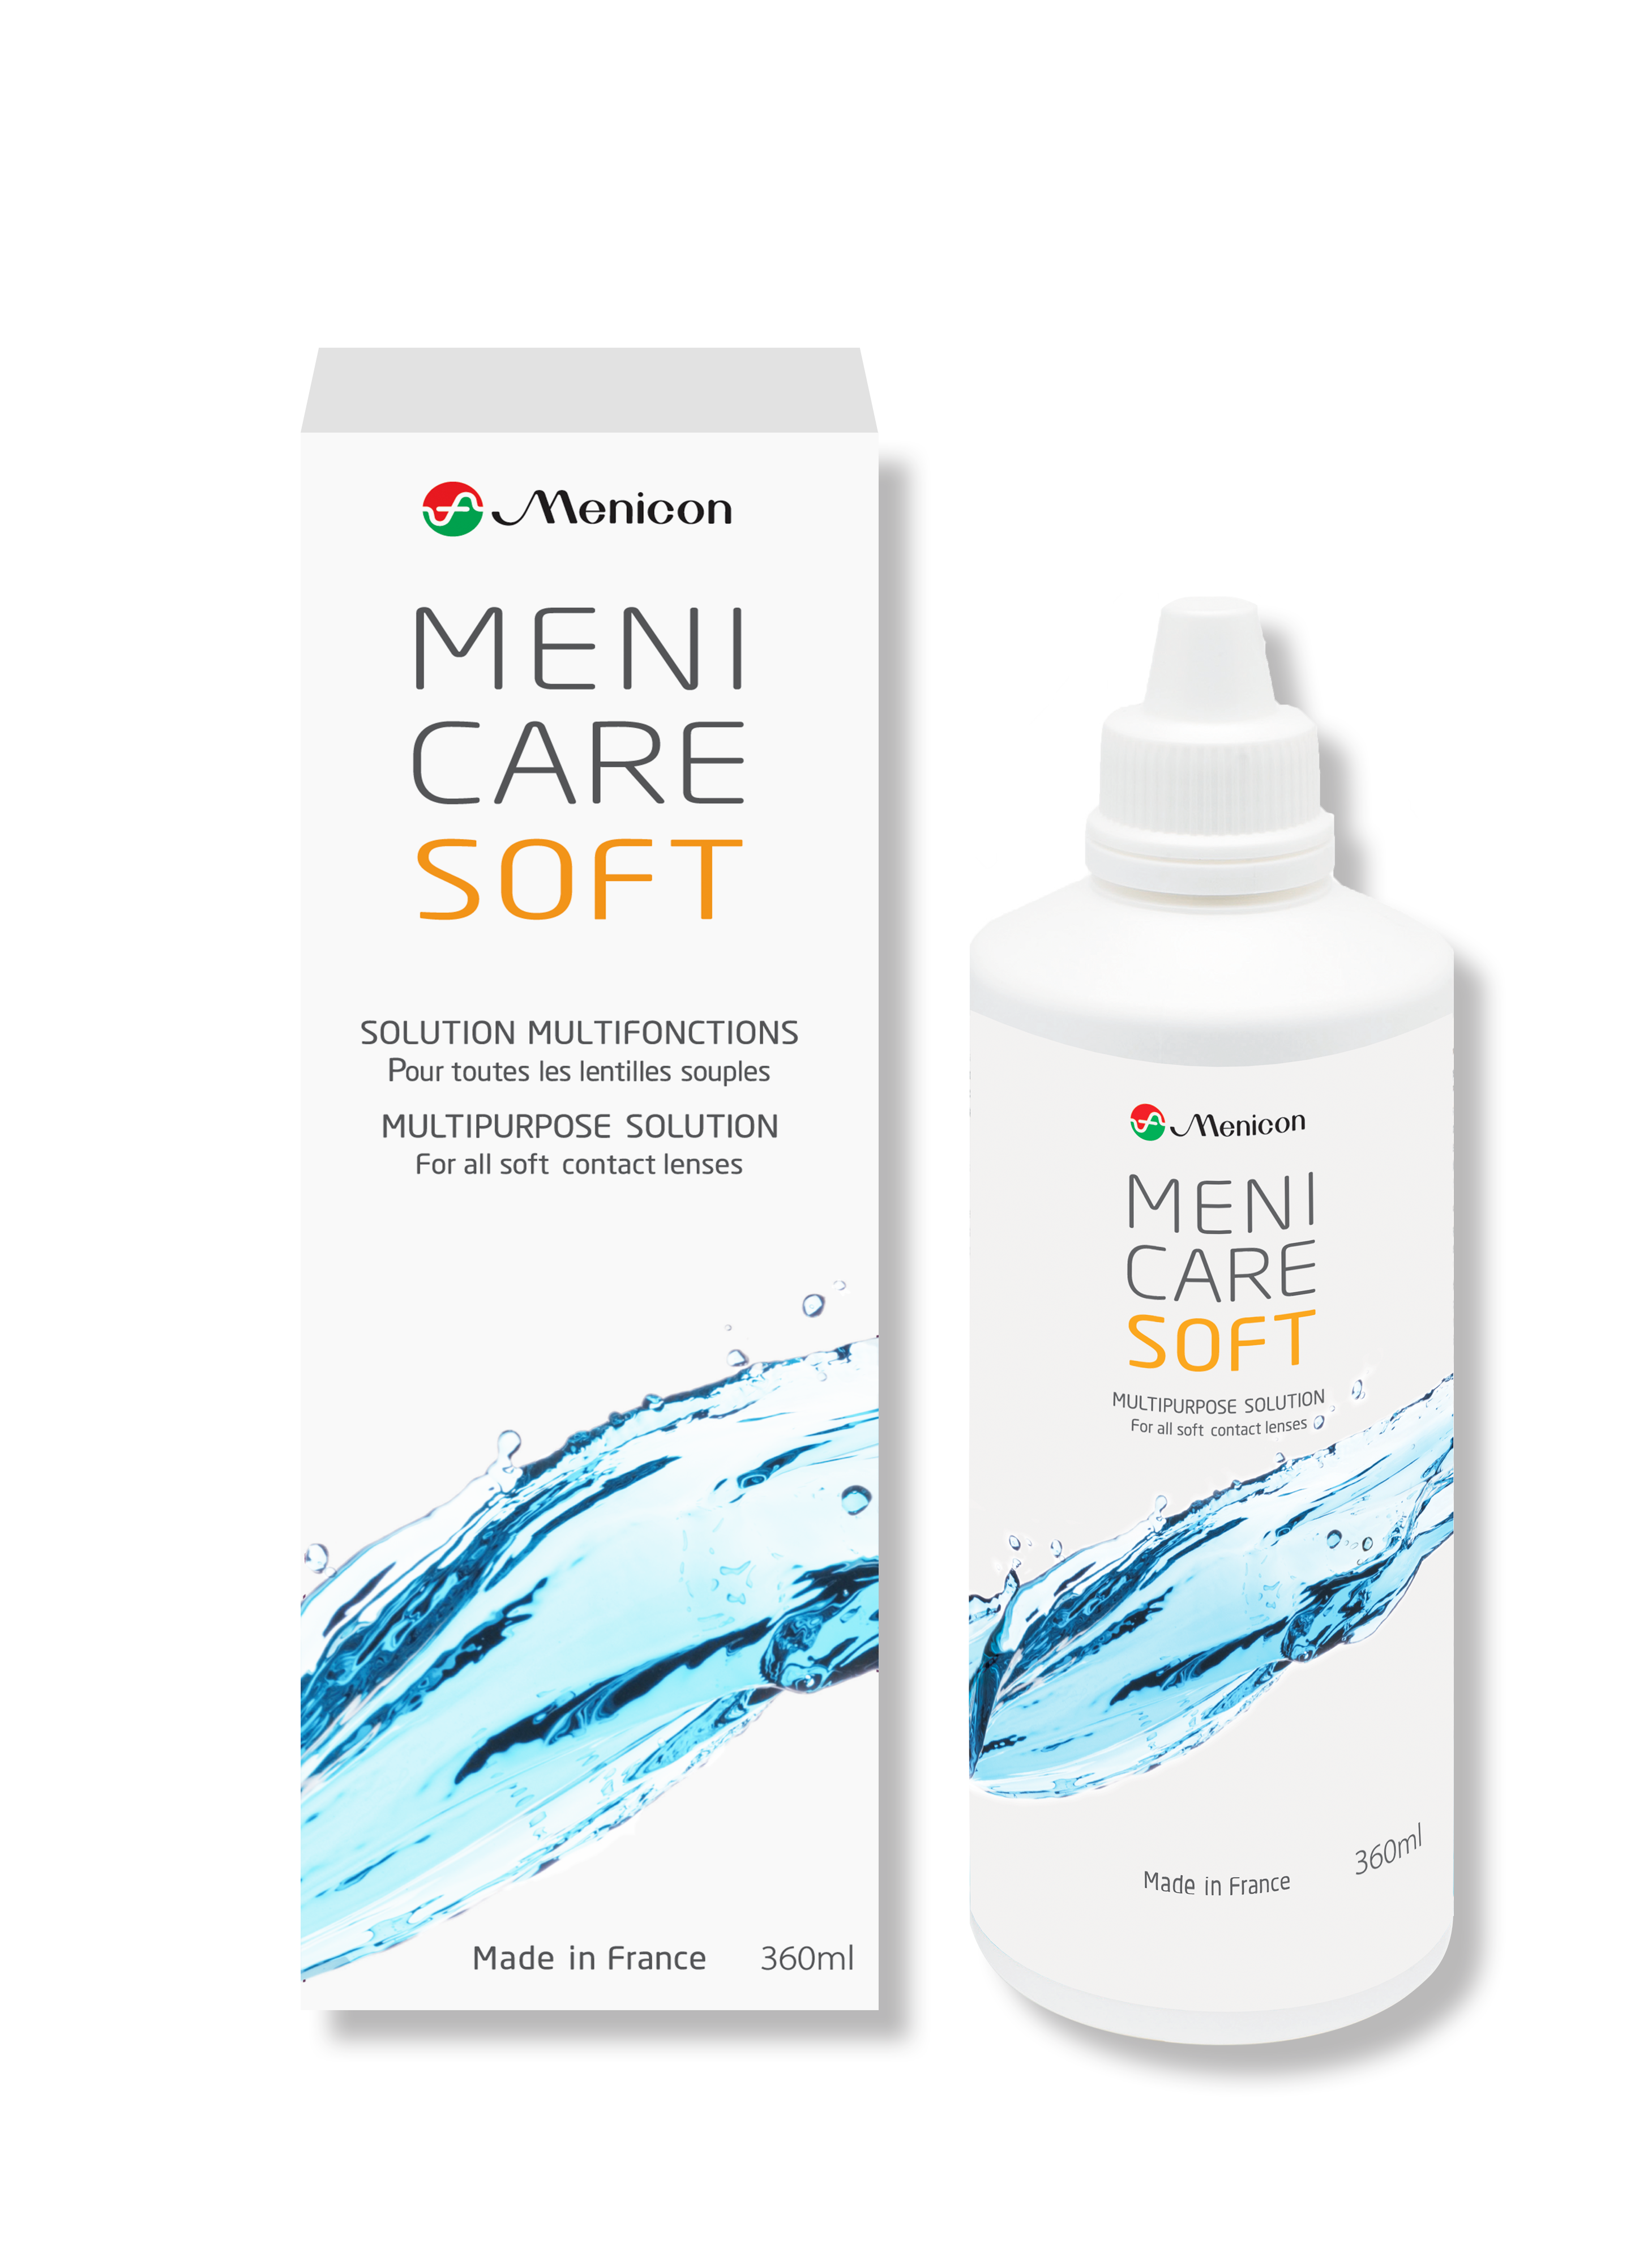 MeniCare Soft 360ml Menicon solution lentille souple